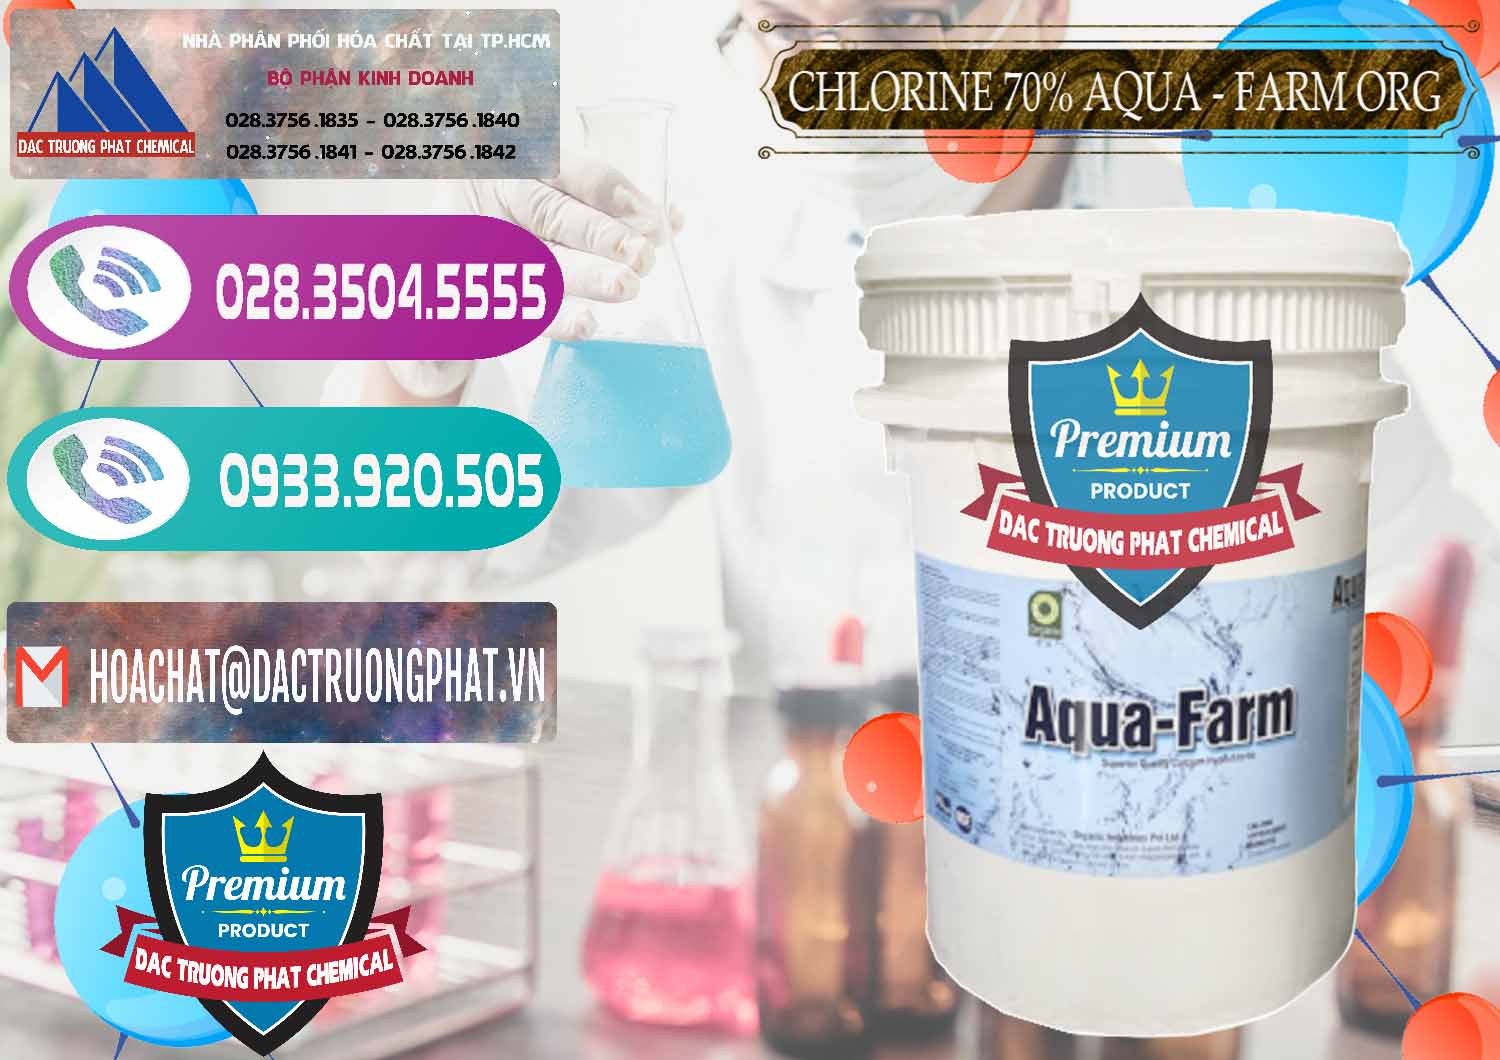 Đơn vị phân phối và bán Chlorine – Clorin 70% Aqua - Farm ORG Organic Ấn Độ India - 0246 - Công ty chuyên kinh doanh - cung cấp hóa chất tại TP.HCM - hoachatxulynuoc.com